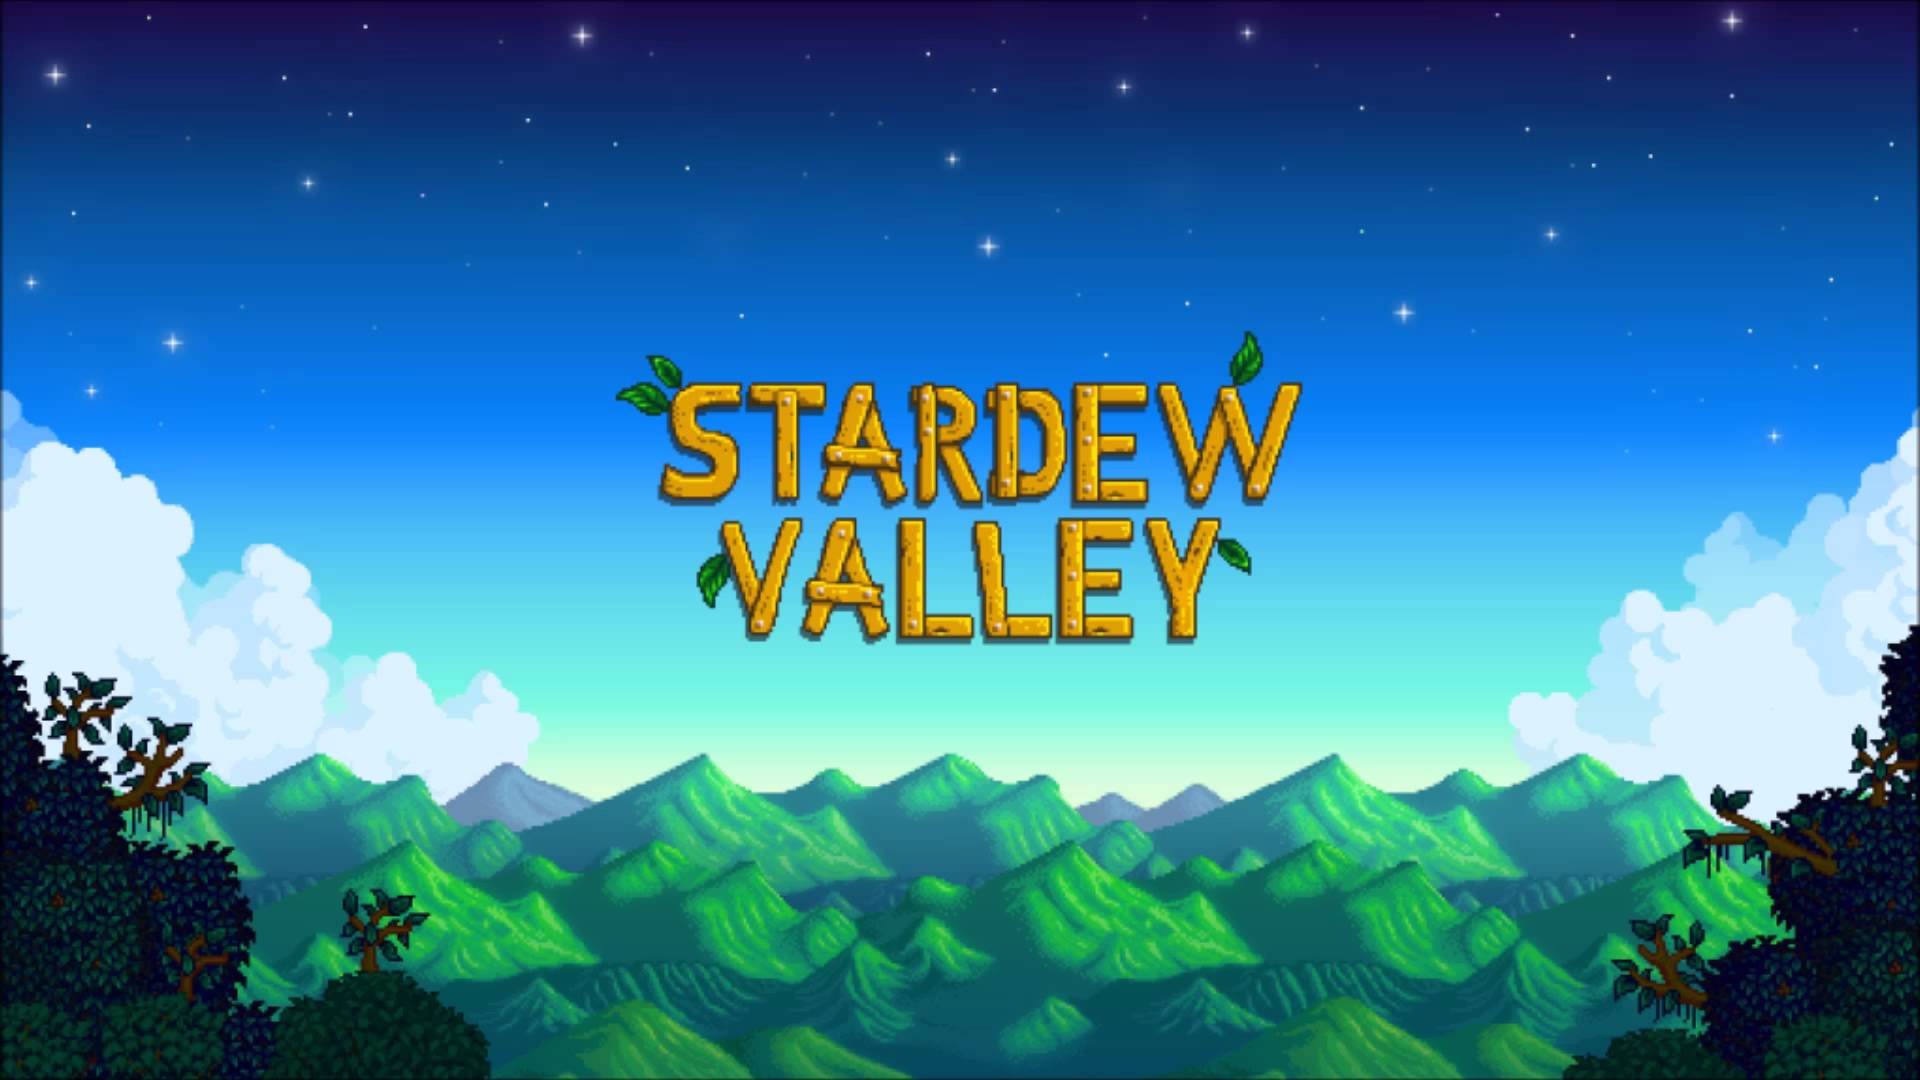 Bundles in 01:01:46.790 by 4 players - Stardew Valley - Speedrun